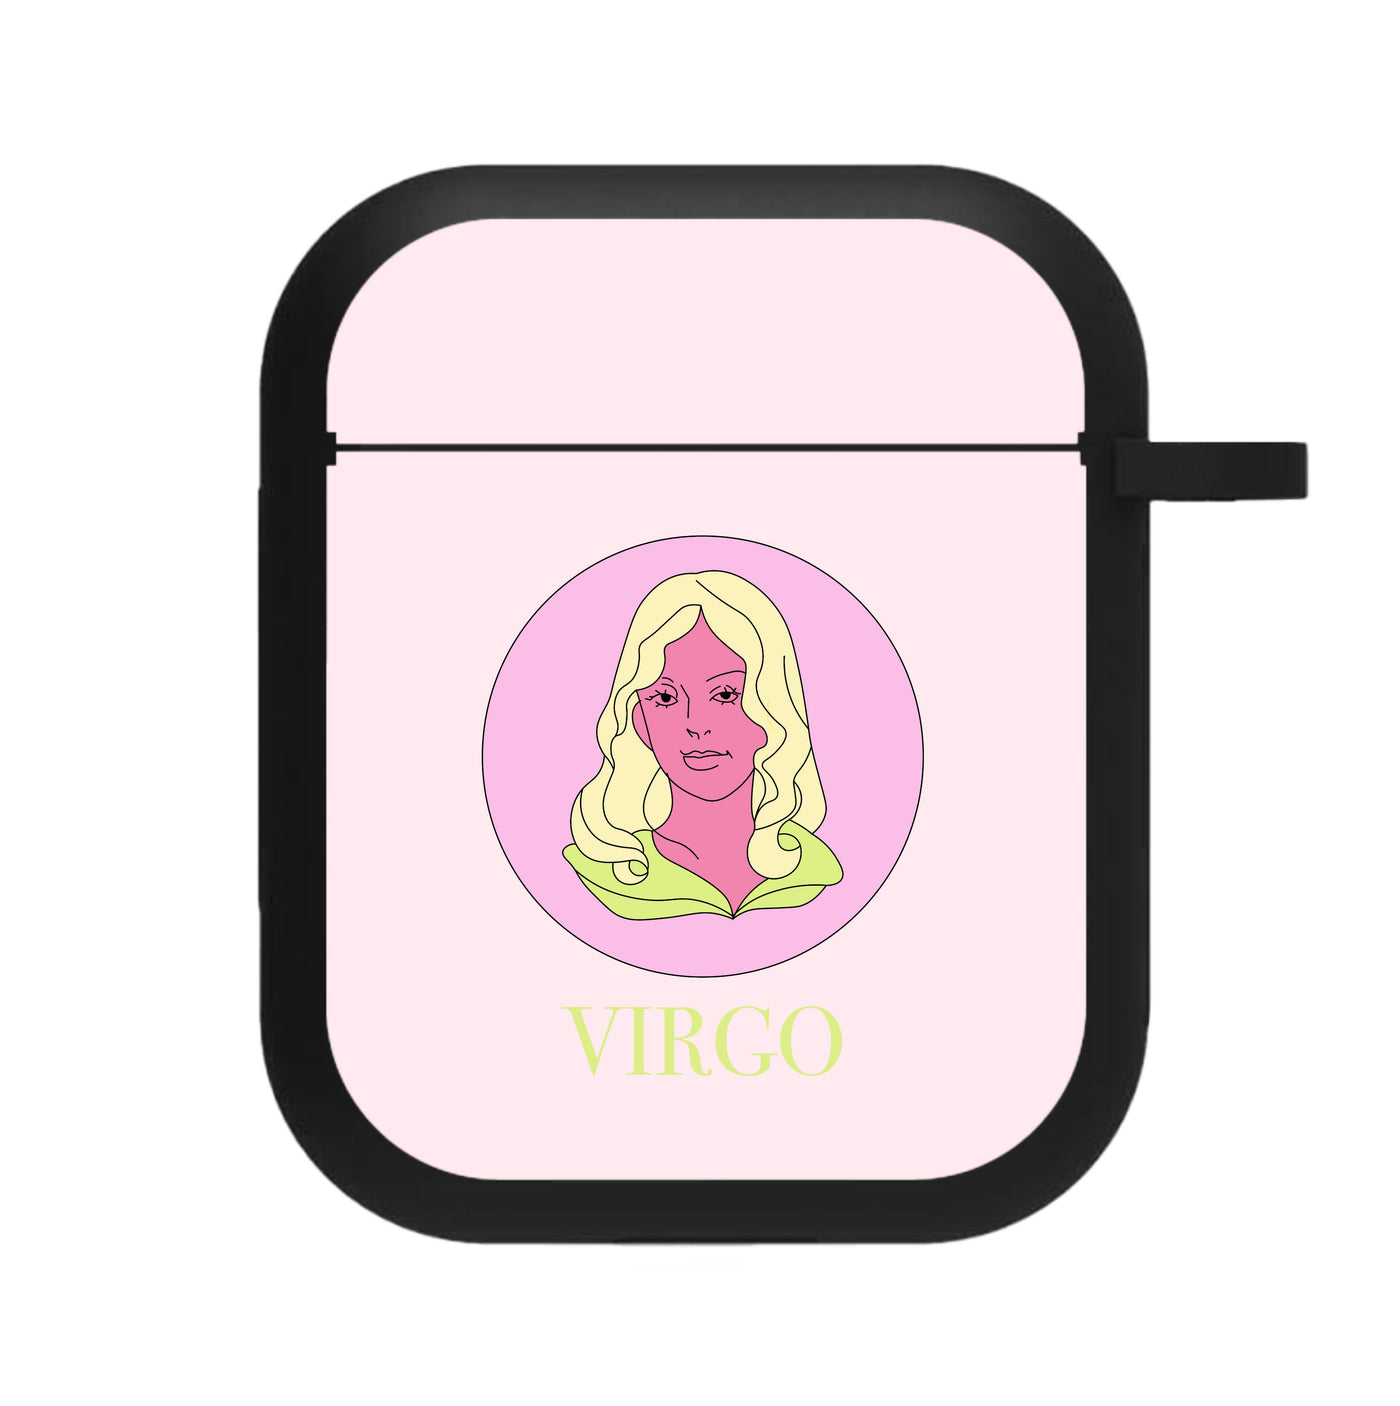 Virgo - Tarot Cards AirPods Case